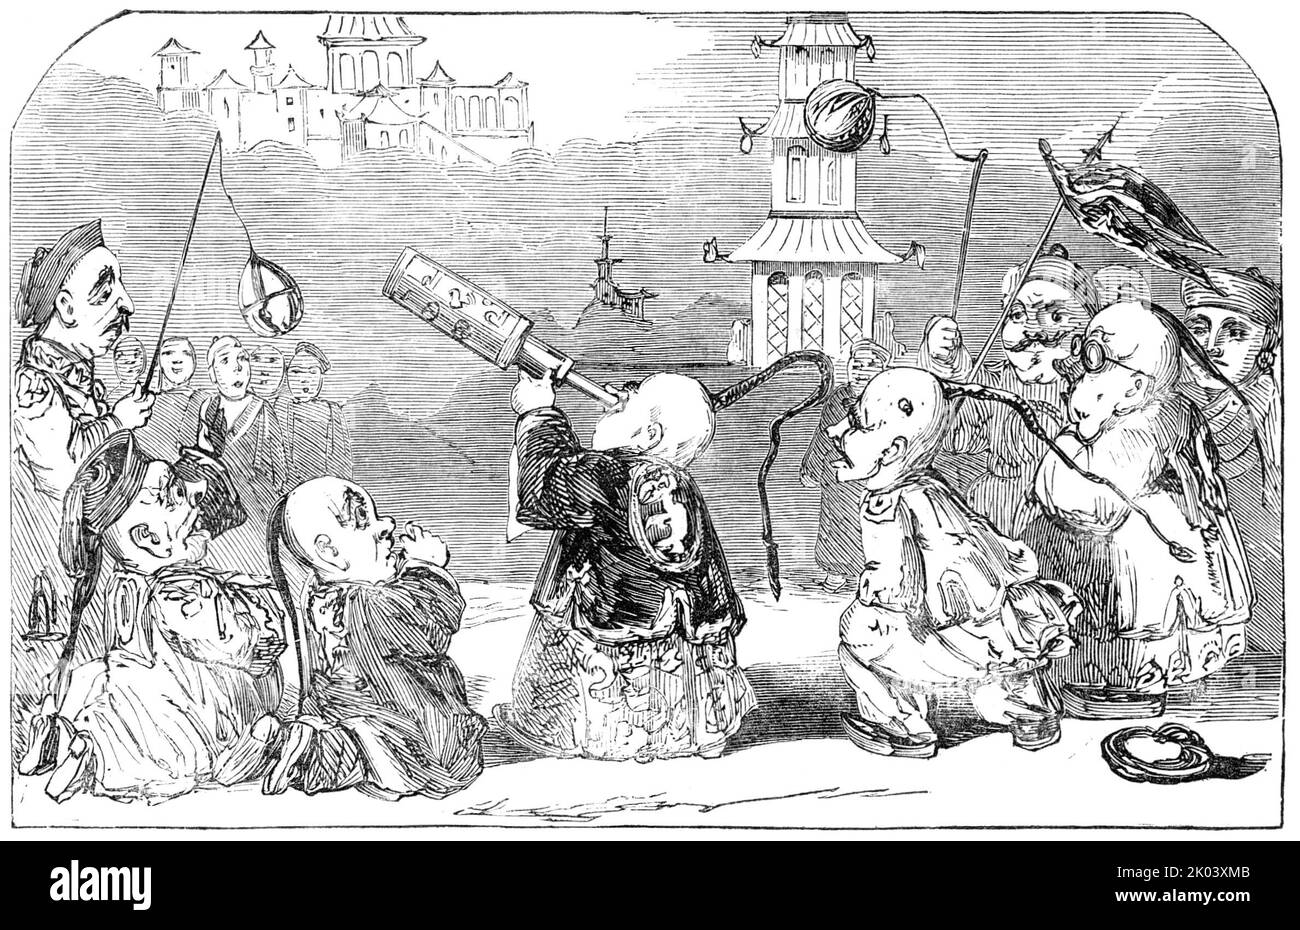 Sadler's Wells - Szene aus „Harlequin and the House that Jack built in 1851“, 1850. Londoner Bühnenproduktion: '...eine lächerliche Szene in der Eröffnung...die Pantomime Hier ist eine Art Zirkusstück, das die bevorstehende Ausstellung von 1851 berührt, mit dem Titel "Harlequin and the House that Jack built in 1851; or, the Genie of the Ring and Aladdin's Wonderful Lamp". Die verzauberte Werkstatt von Jack-of-all-Trades eröffnet das Drama, der seinen Arbeitern verkündet, er will ein Haus der Industrieausstellung bauen. Die Erfindung greift schließlich ein, und zwar unter dem Vorwand, dass dies der Gegenstand ist Stockfoto